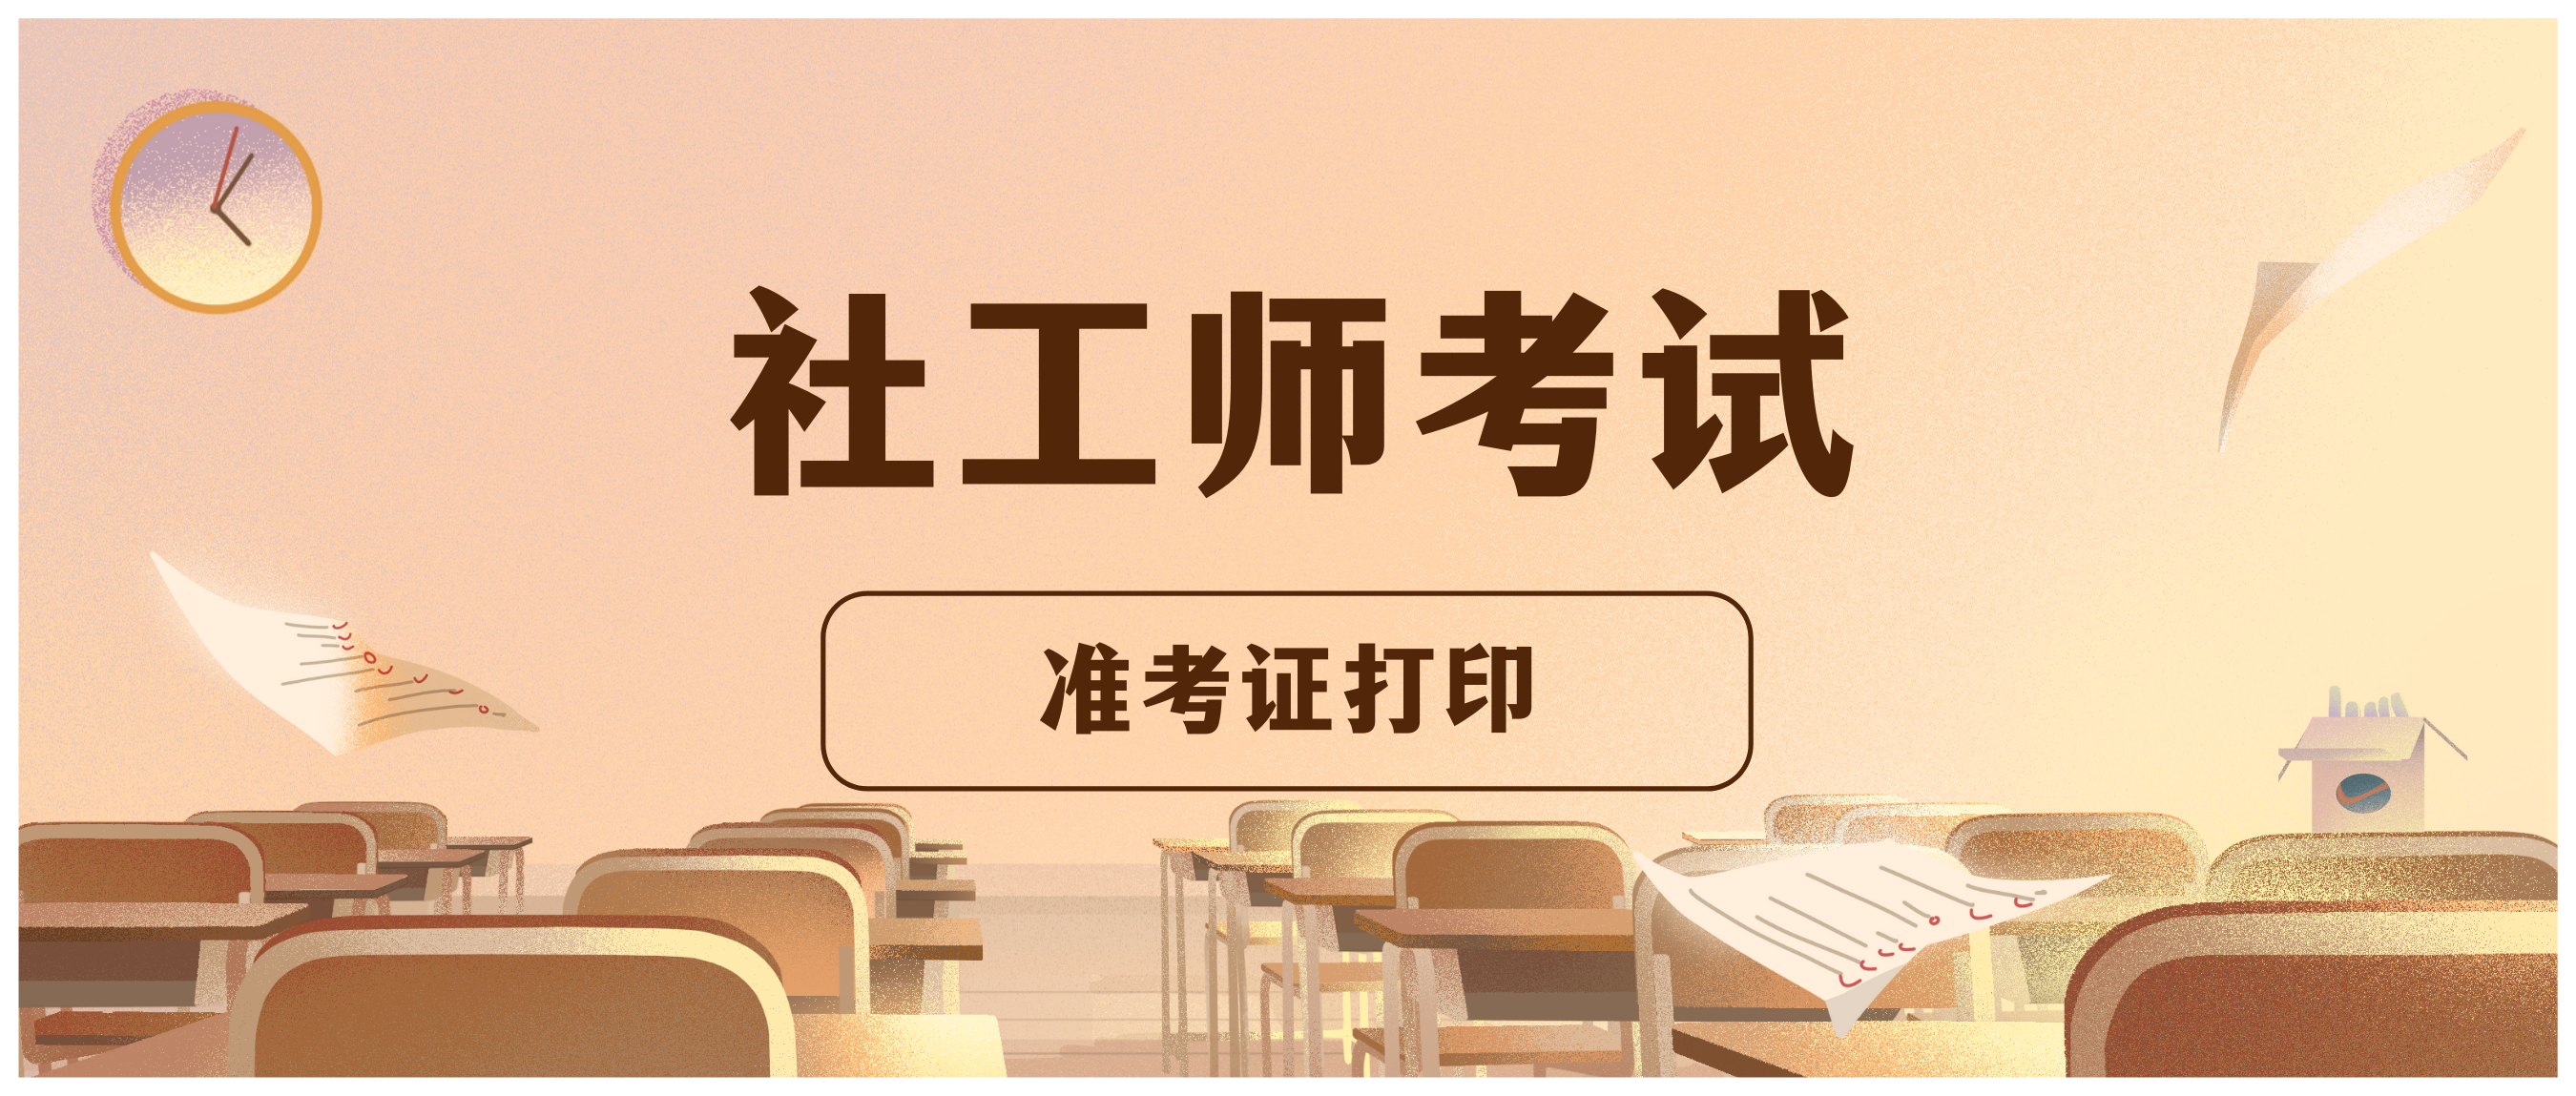 @成都考生 2021年社工师考试10月11日至15日打印准考证啦！